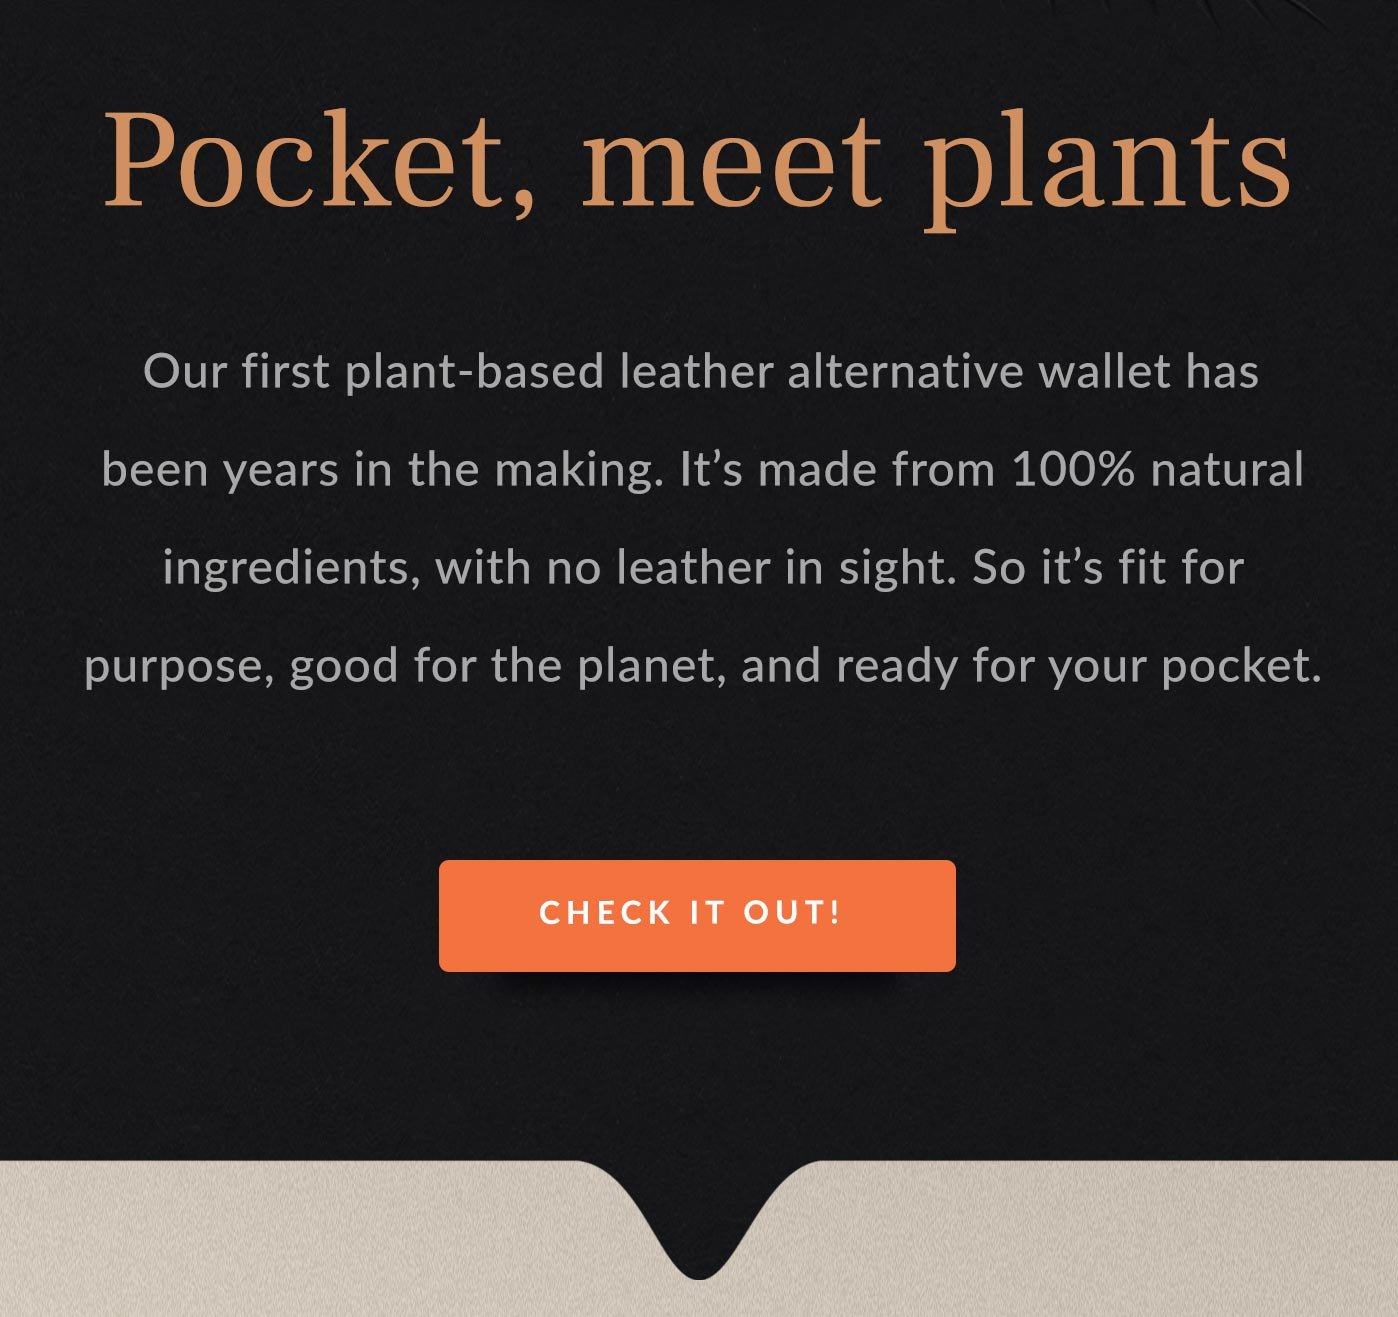 Pocket, meet plants